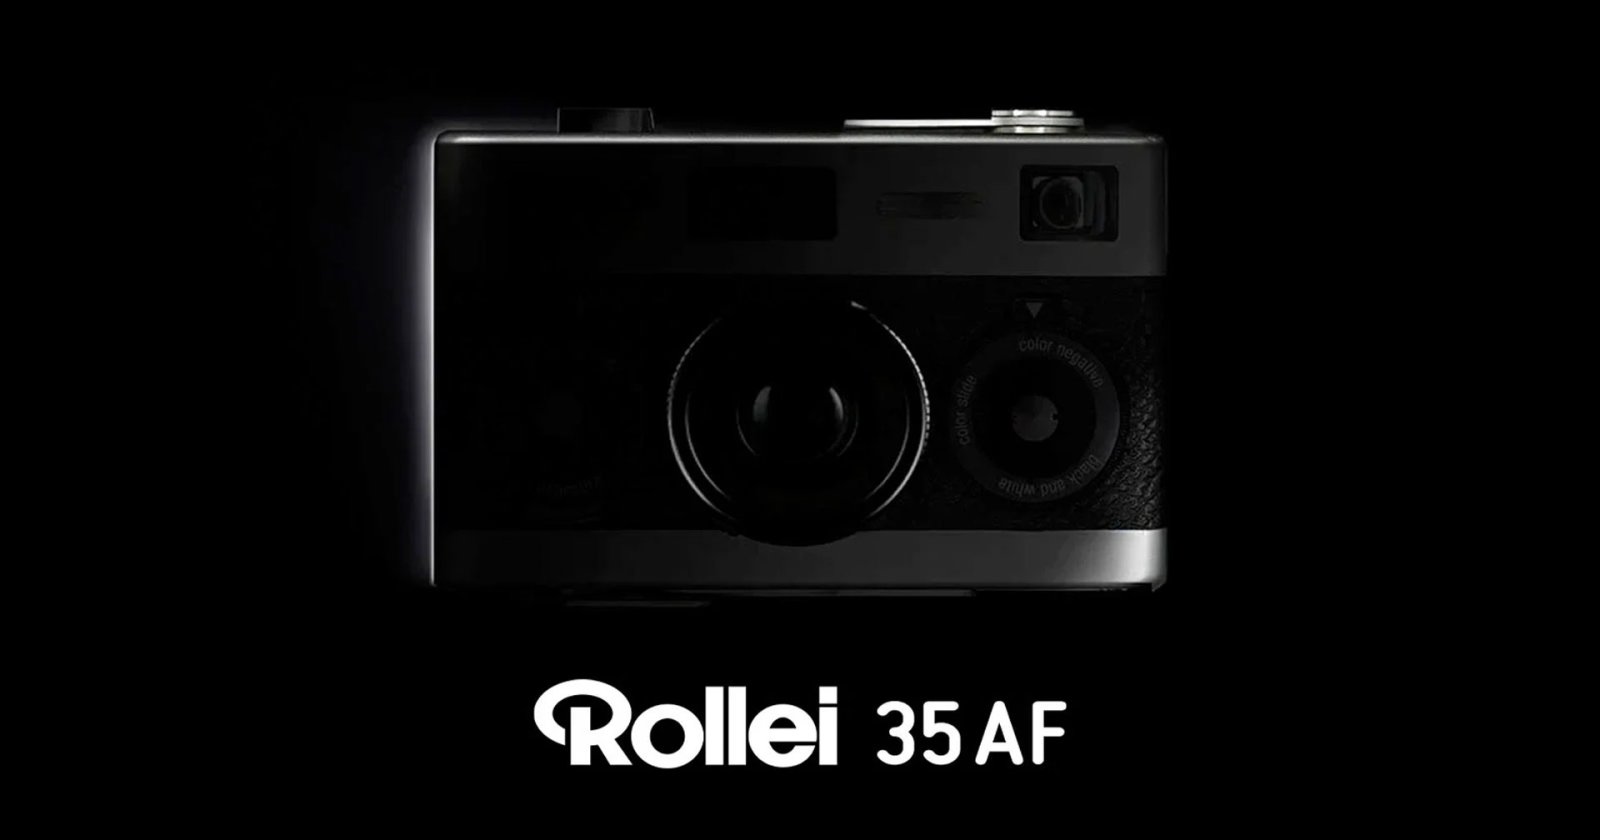 Rollei 35AF ชุบชีวิตกล้องฟิล์ม 35mm เล็กที่สุดในโลก ที่มาพร้อมระบบ Autofocus